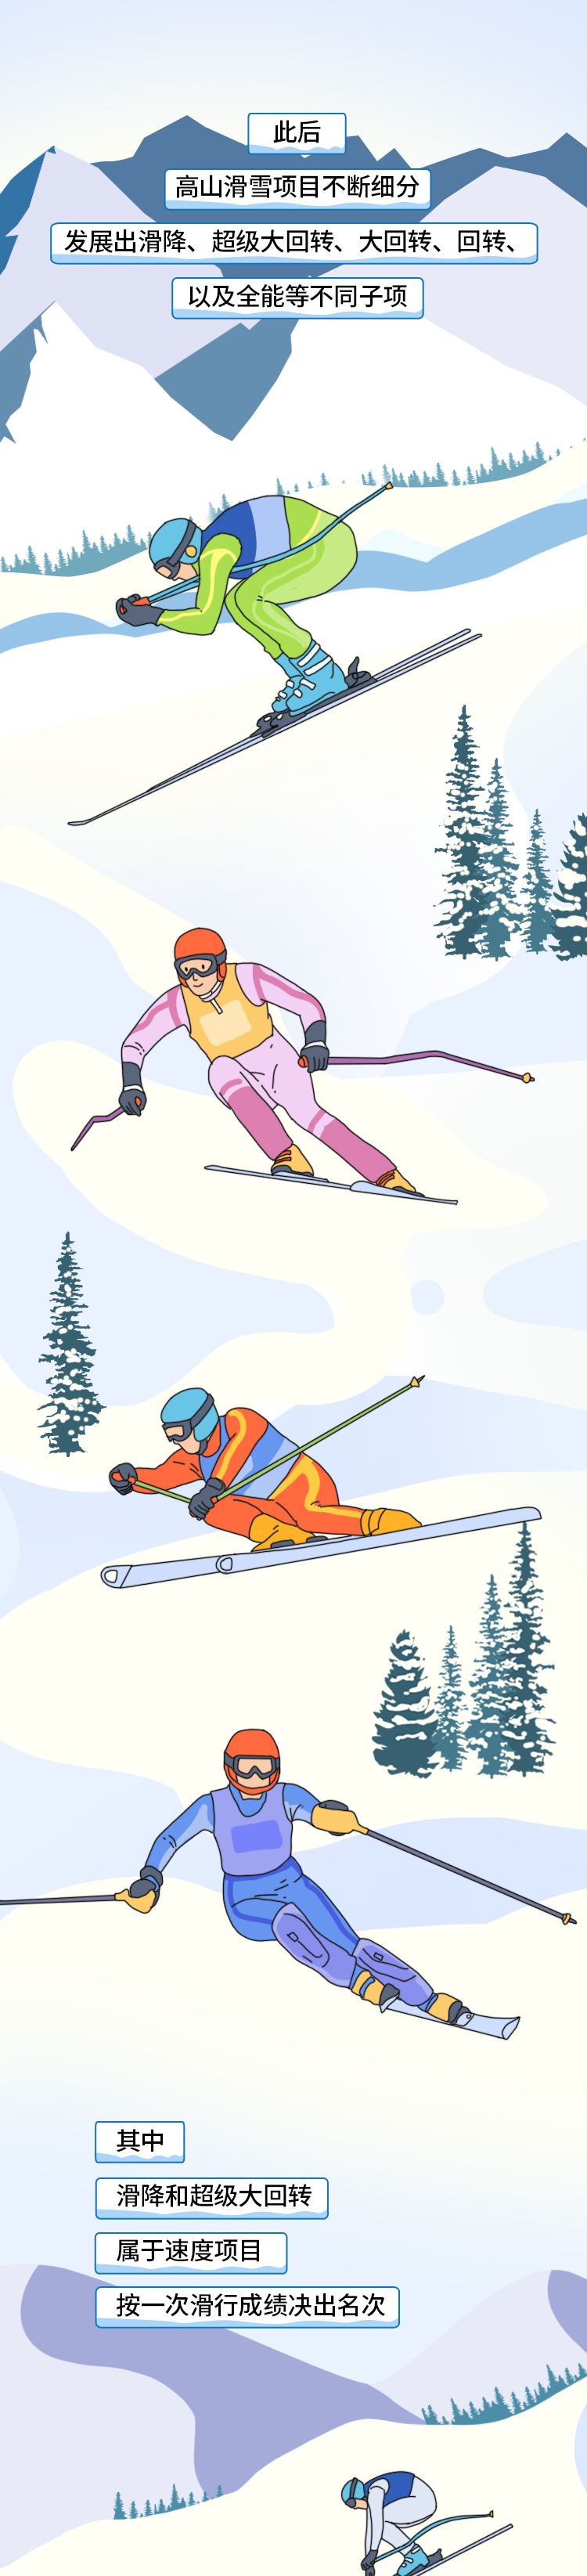 高山滑雪_02